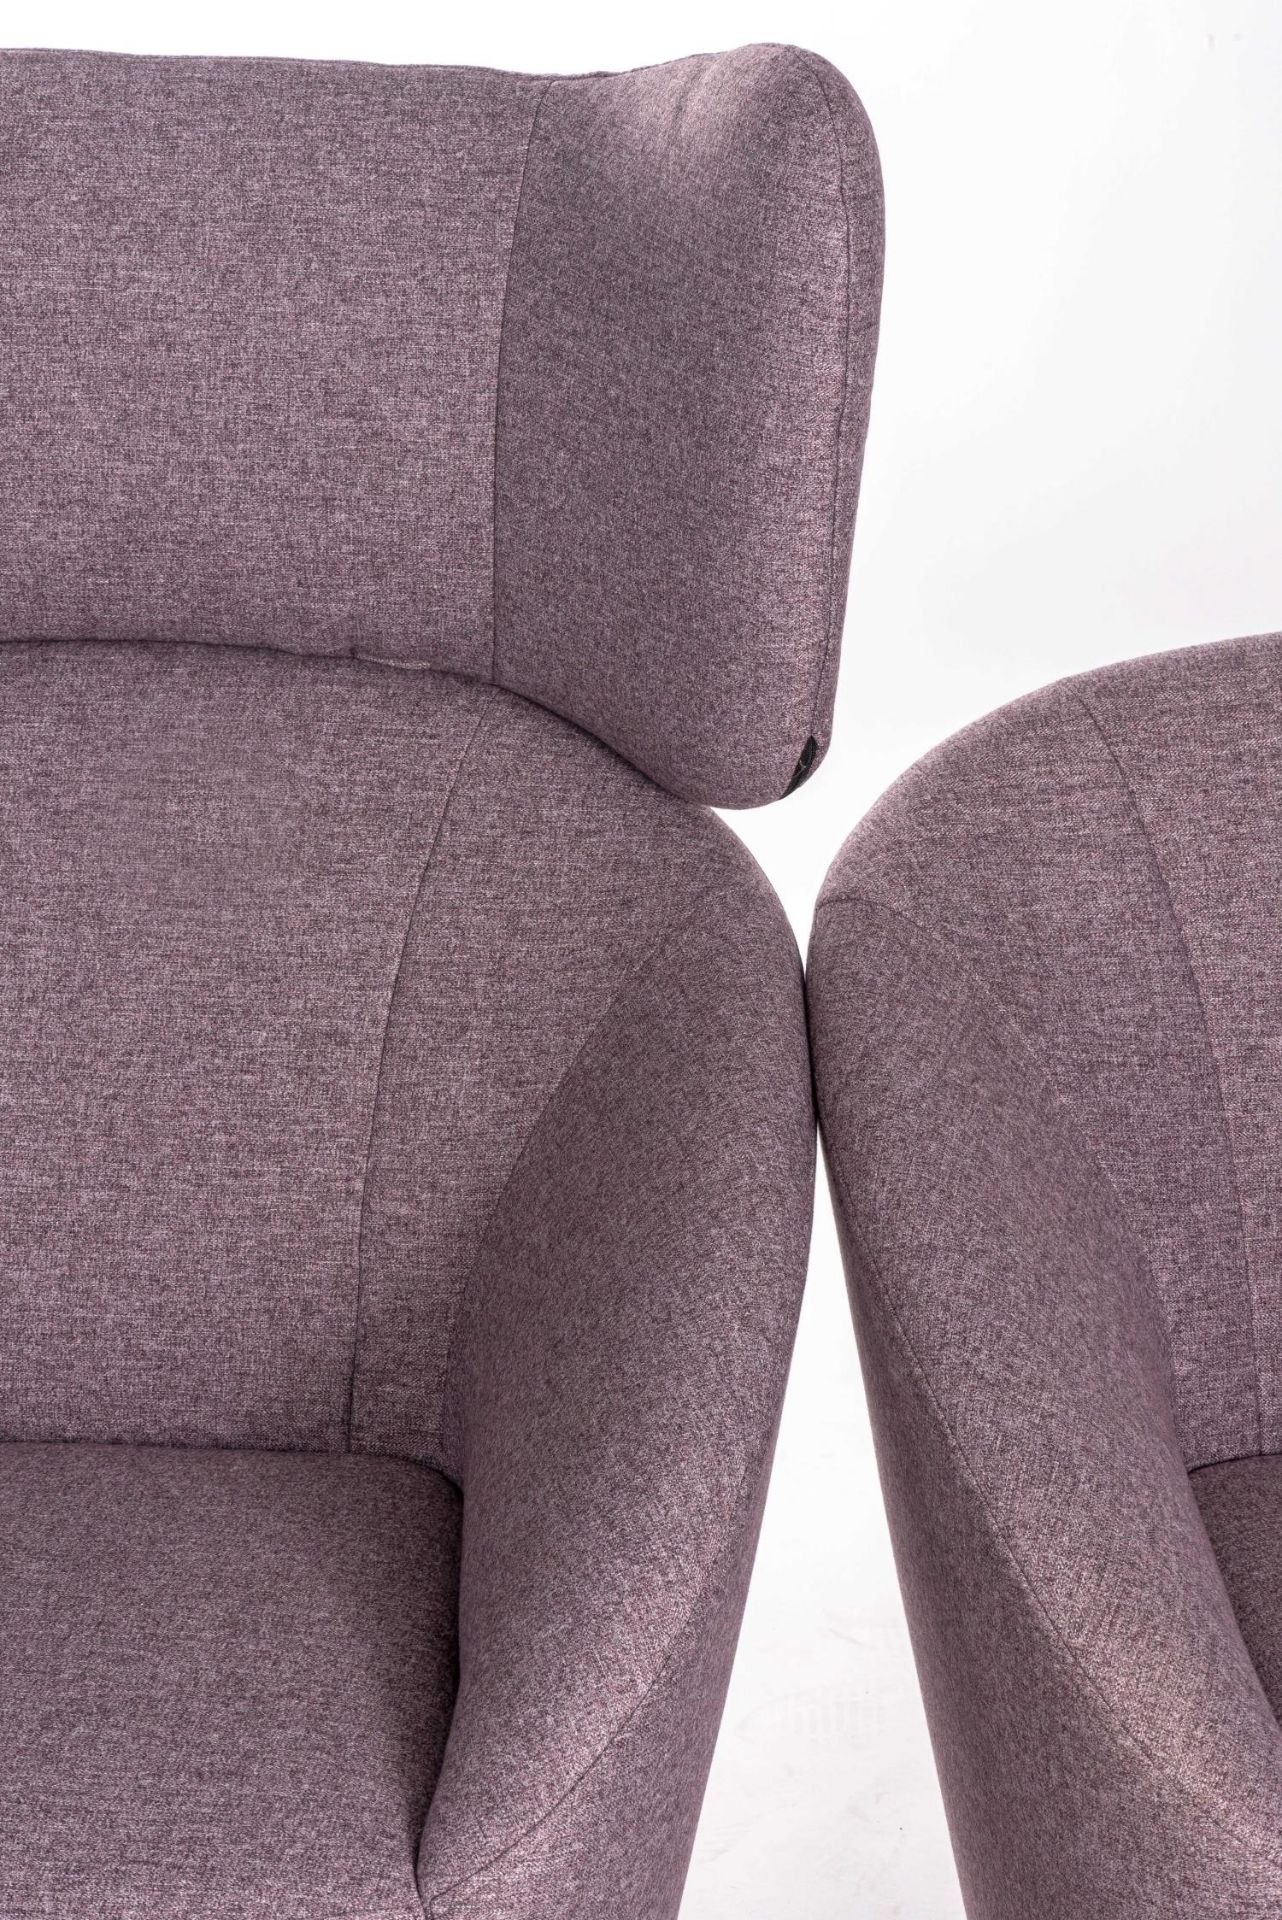 2 fauteuils Freistil 178 recouverts d'un tissu pastel-violet 2044 dont l'un avec [...] - Bild 2 aus 4